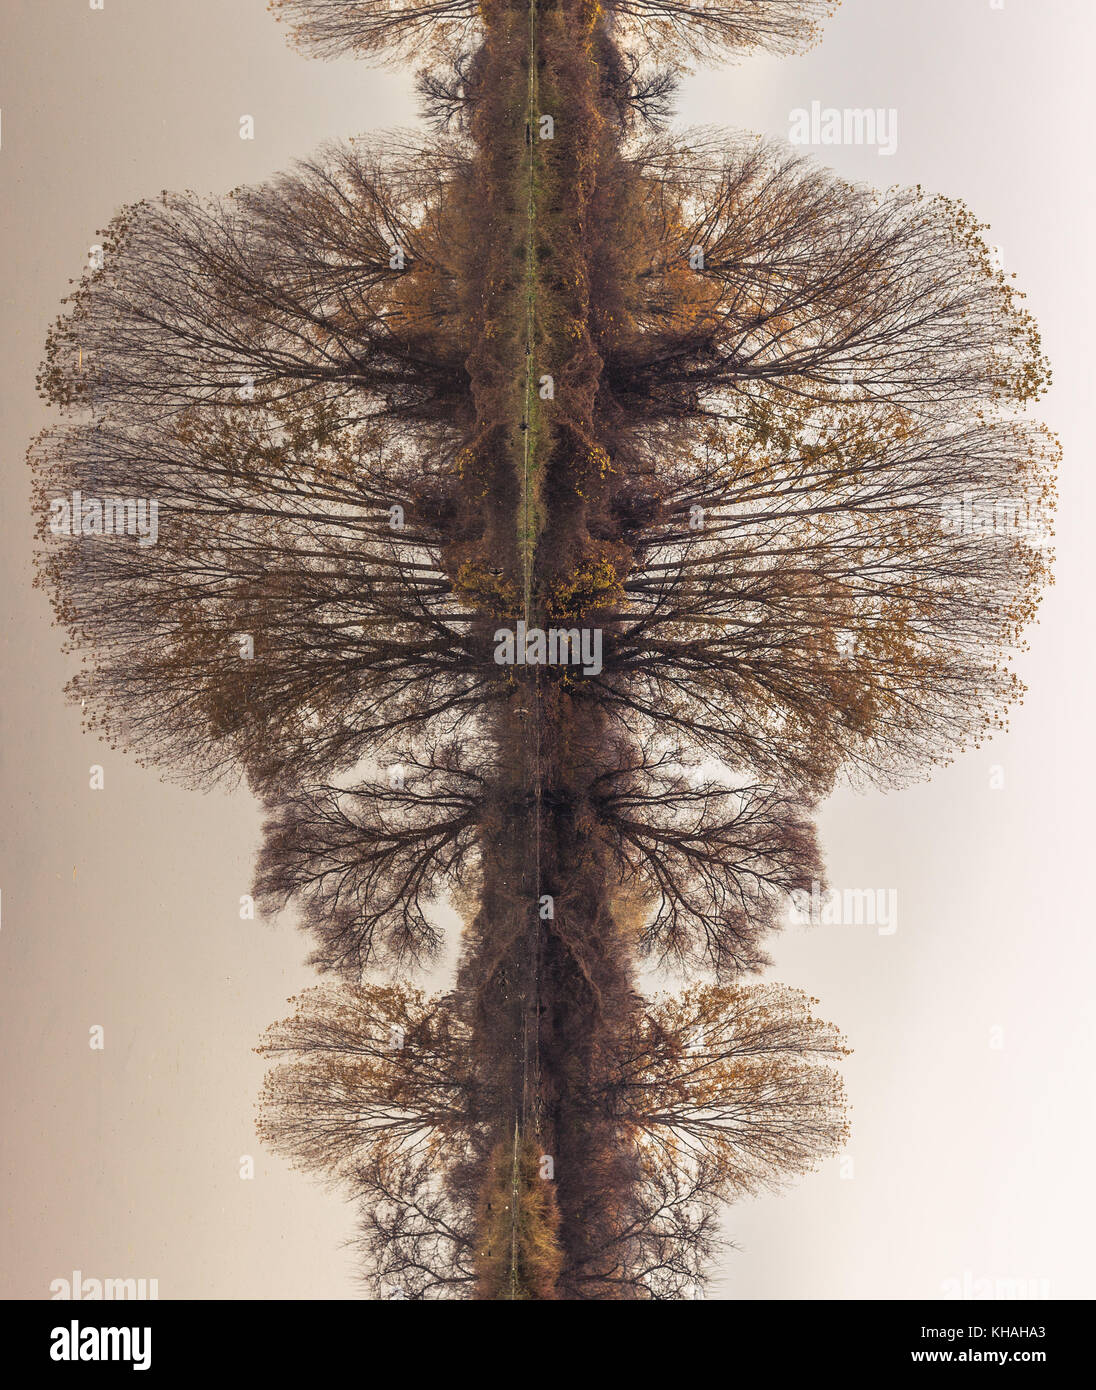 Abstrakte, gedreht, Reflexion riverbank Bäume auf dem ruhigen Wasser des Flusses, Erstellen perfekte natürliche Symmetrie, ähnlich Rorschach Test Bilder Stockfoto